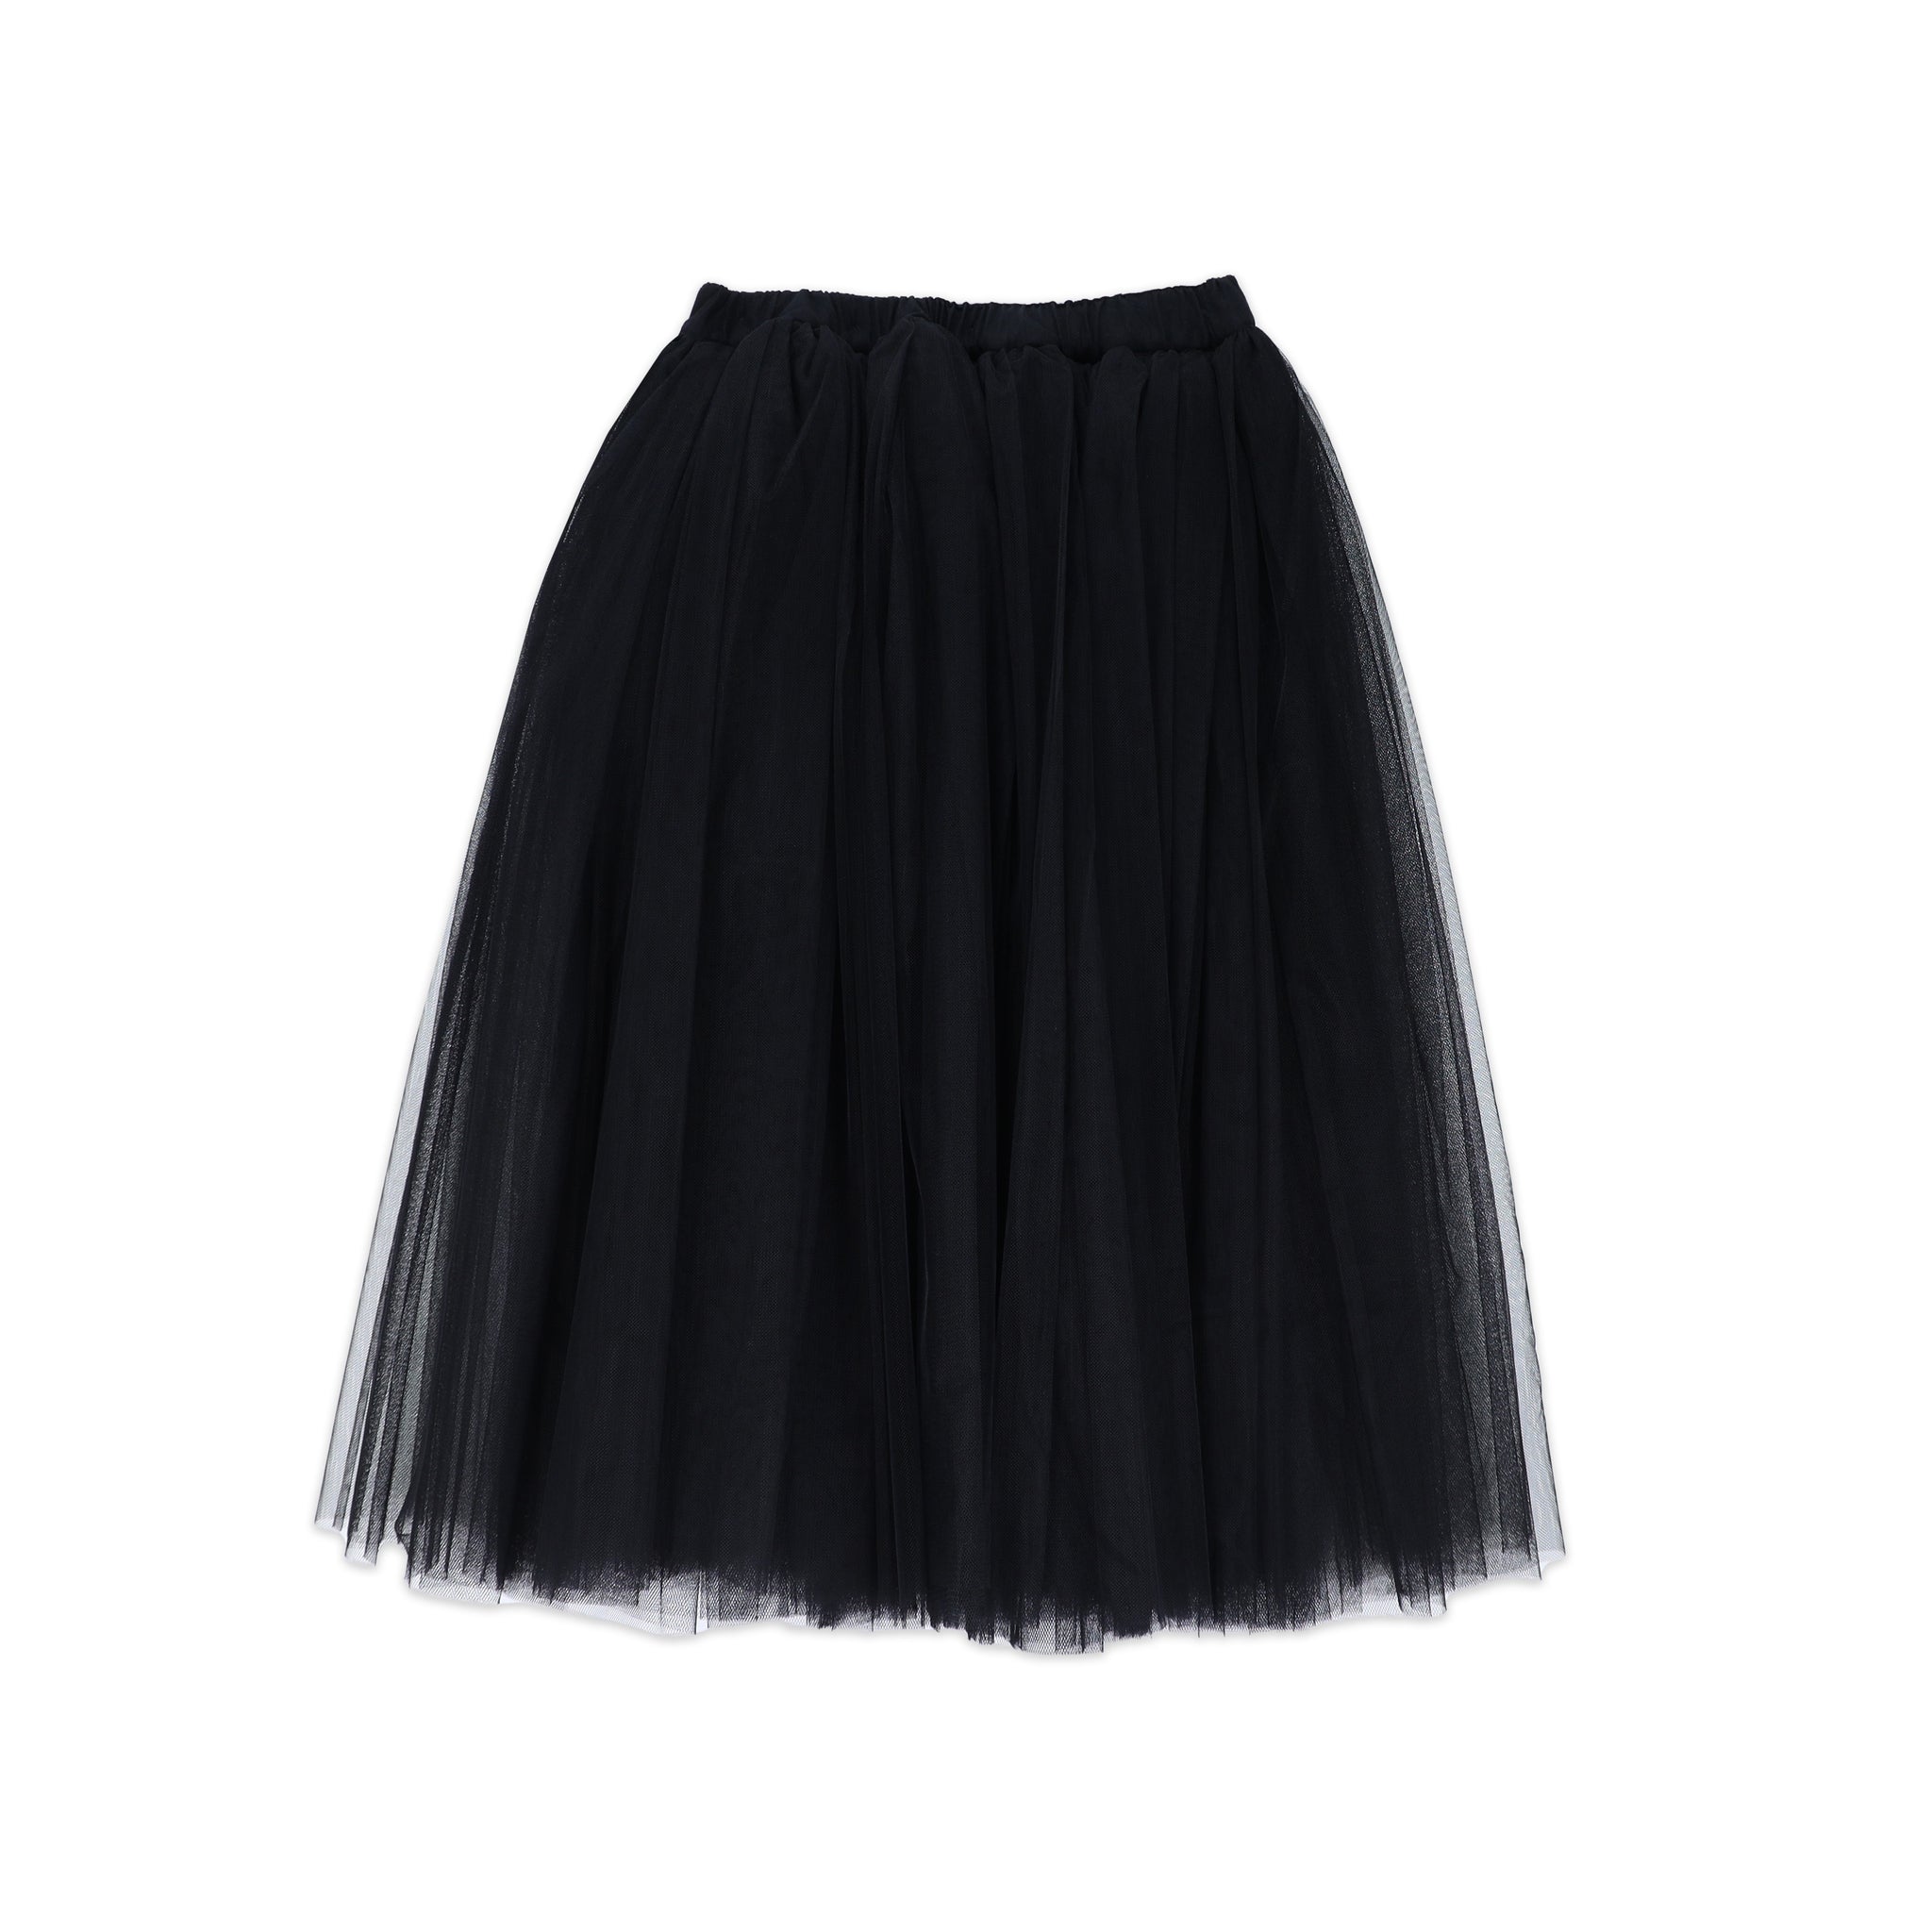 Black Tulle Mid-Length Skirt